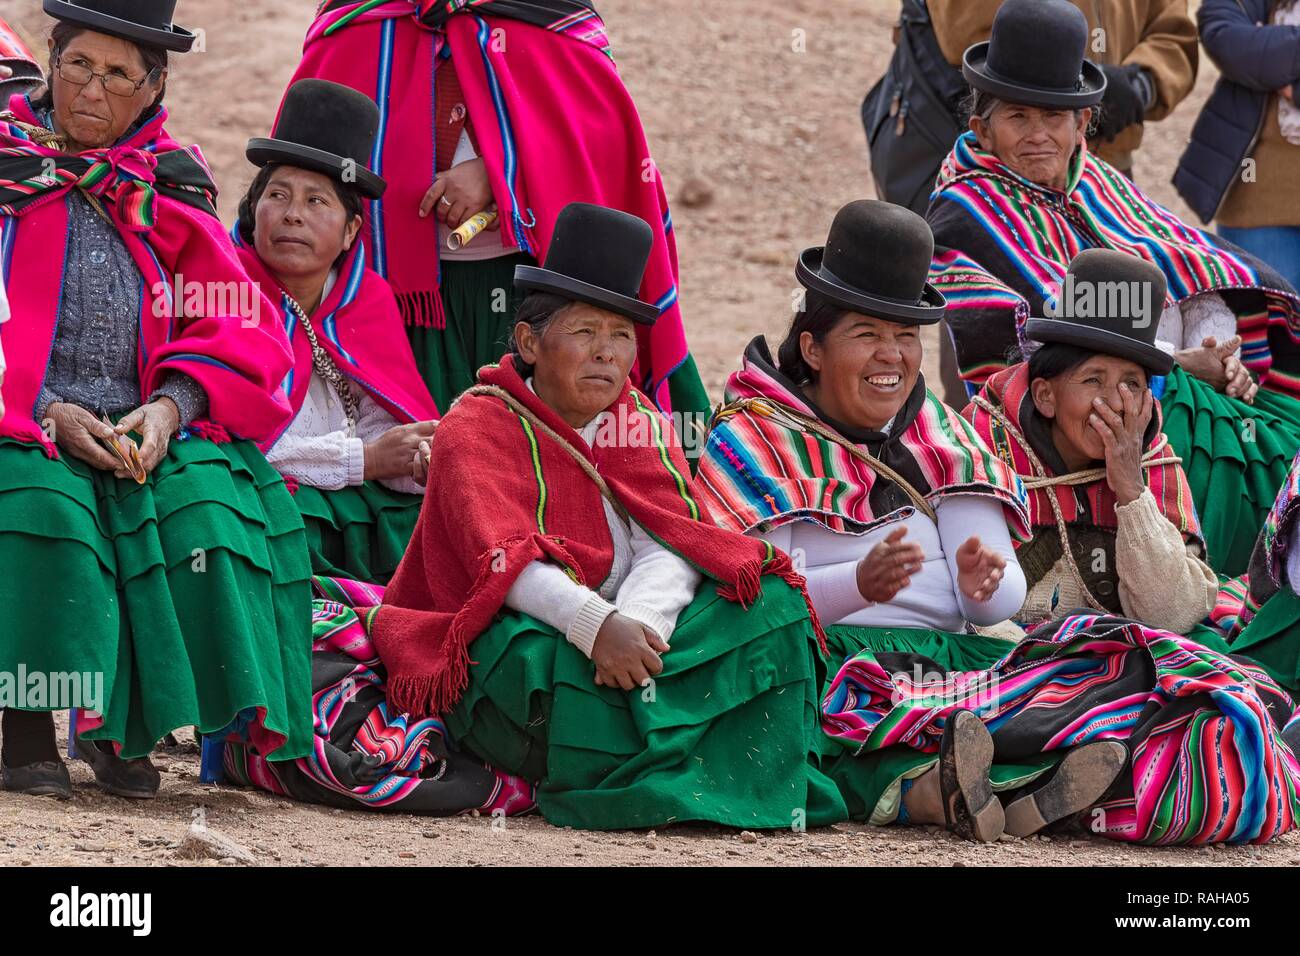 Las mujeres indígenas (chola, cholita) en típicos trajes nacionales (pollera, overskirt y bufanda, manta) con sombrero típico (melón Foto de stock